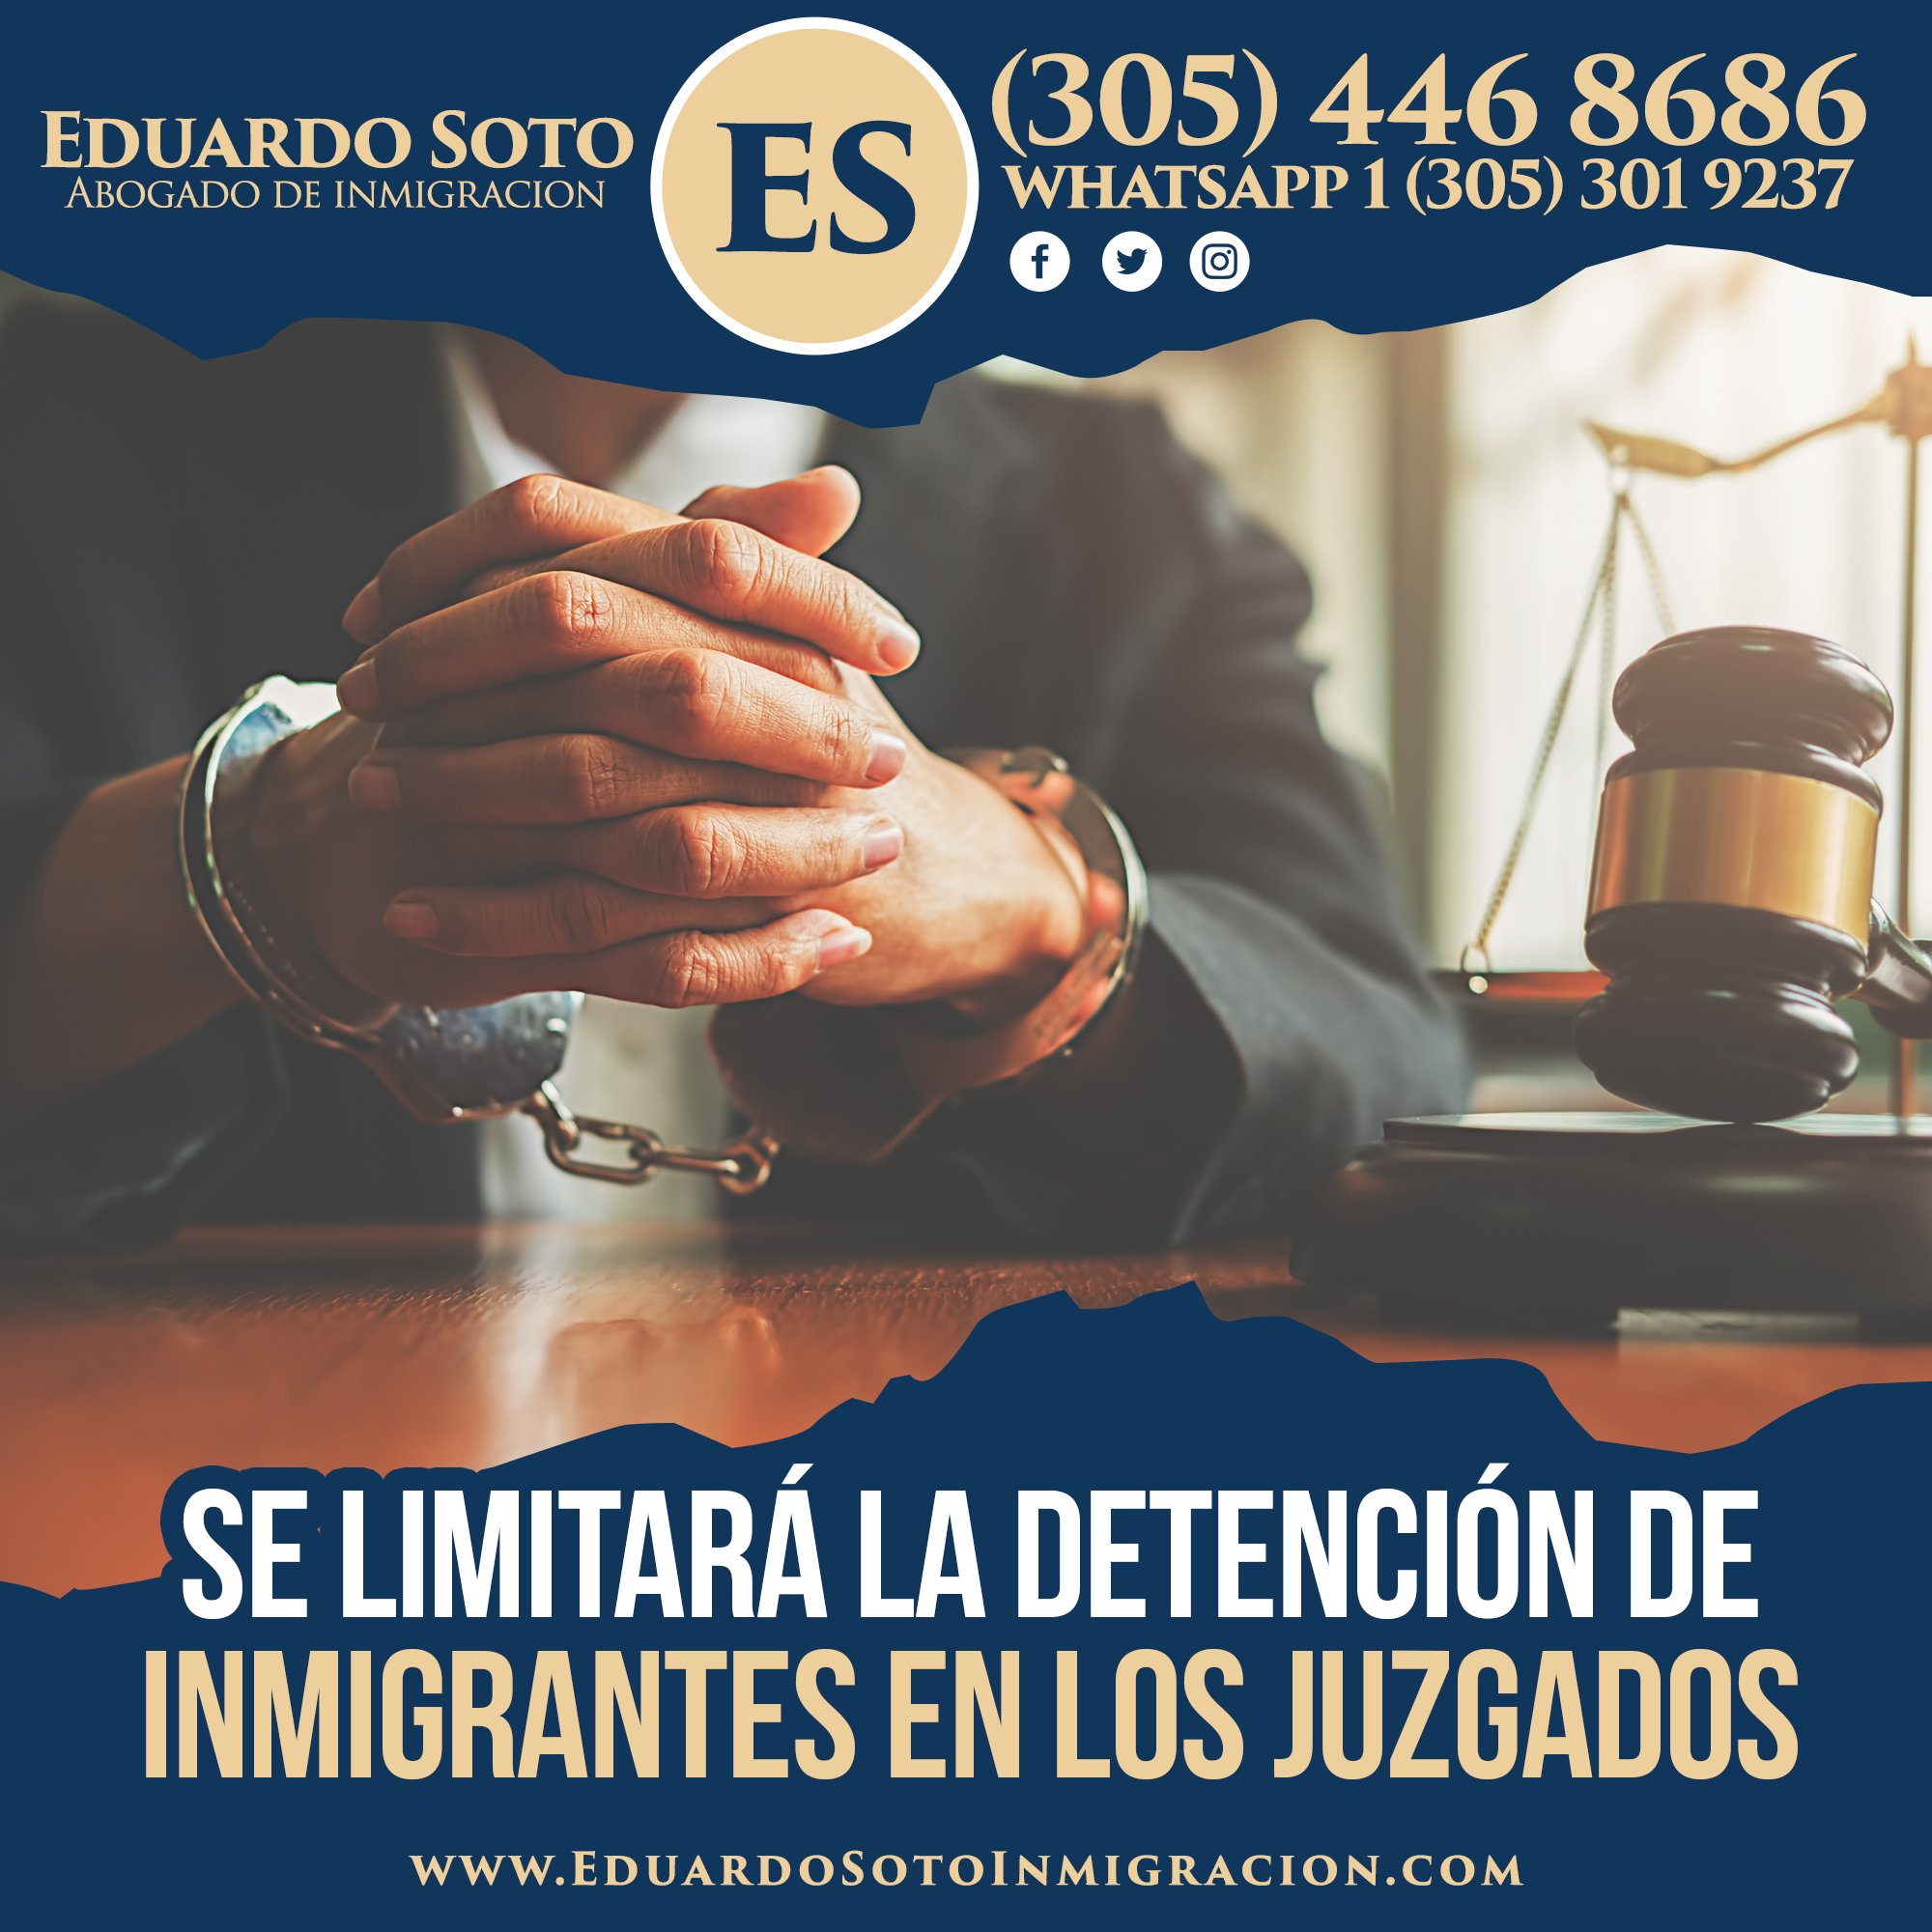 Se limitará la detención de inmigrantes en los juzgados